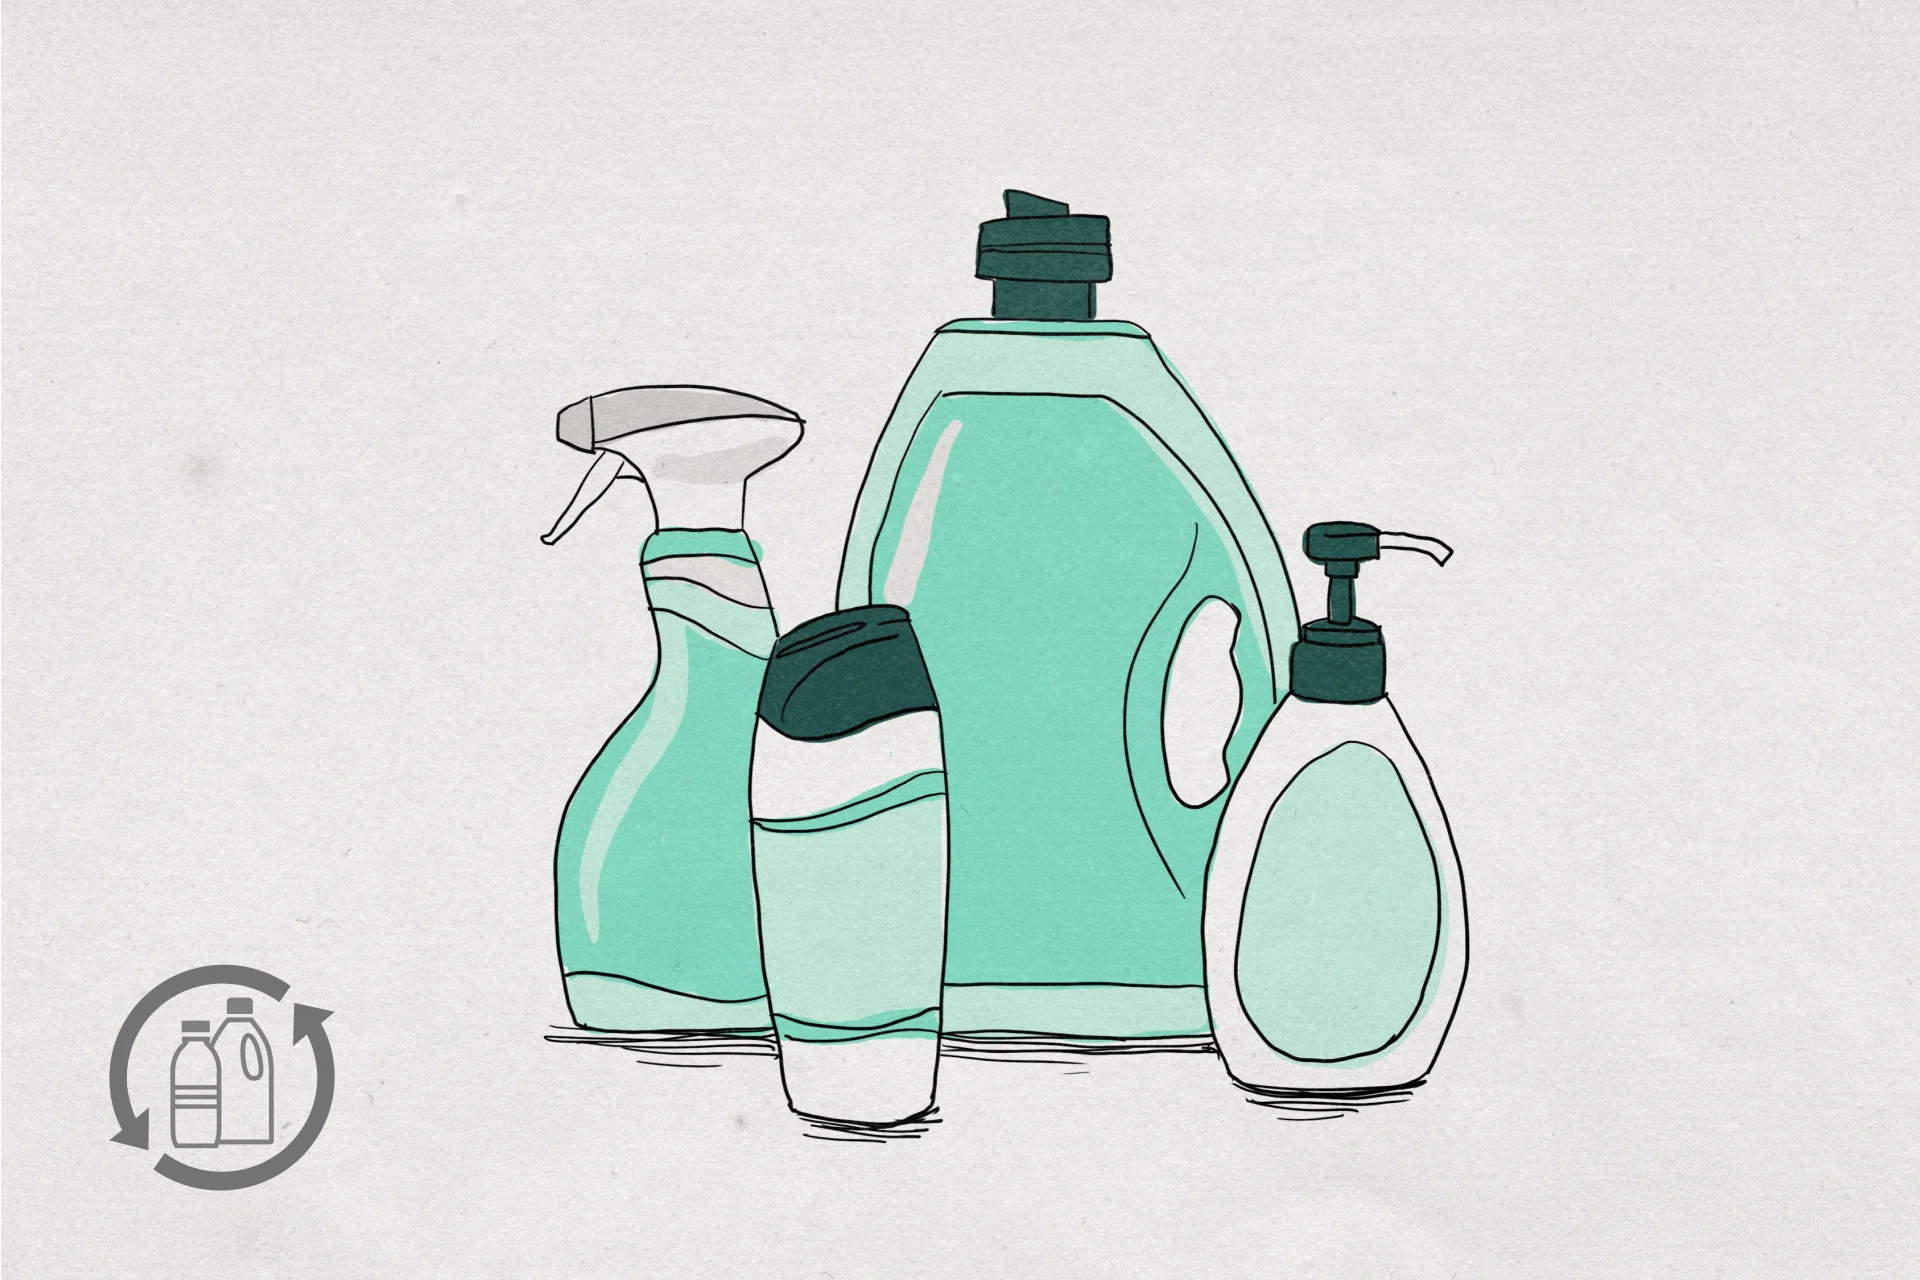 Immagine di flaconi di plastica vuoti di saponi, shampoo, detersivi e detergenti